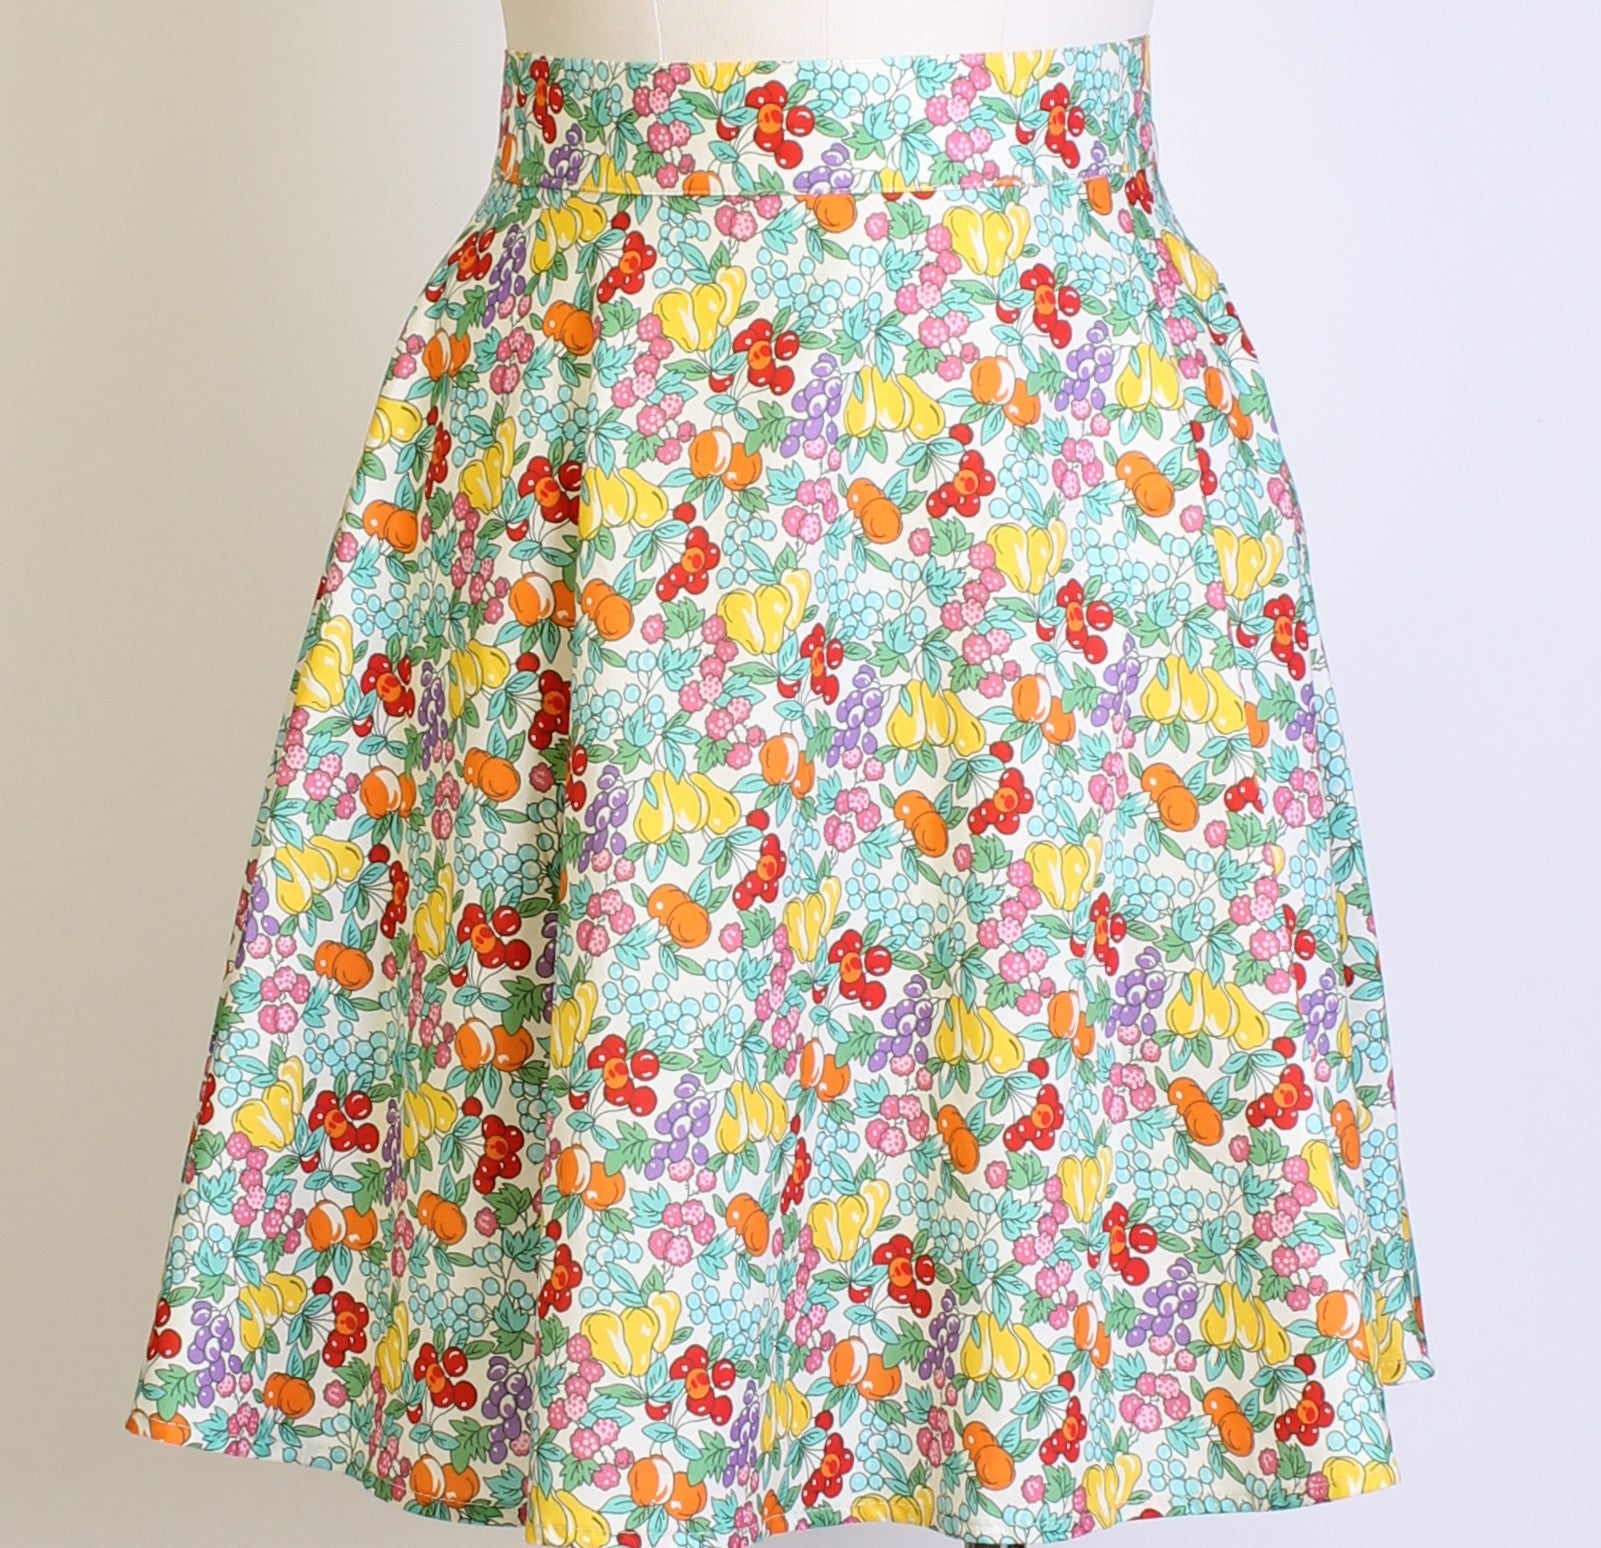 Fruit Skirt